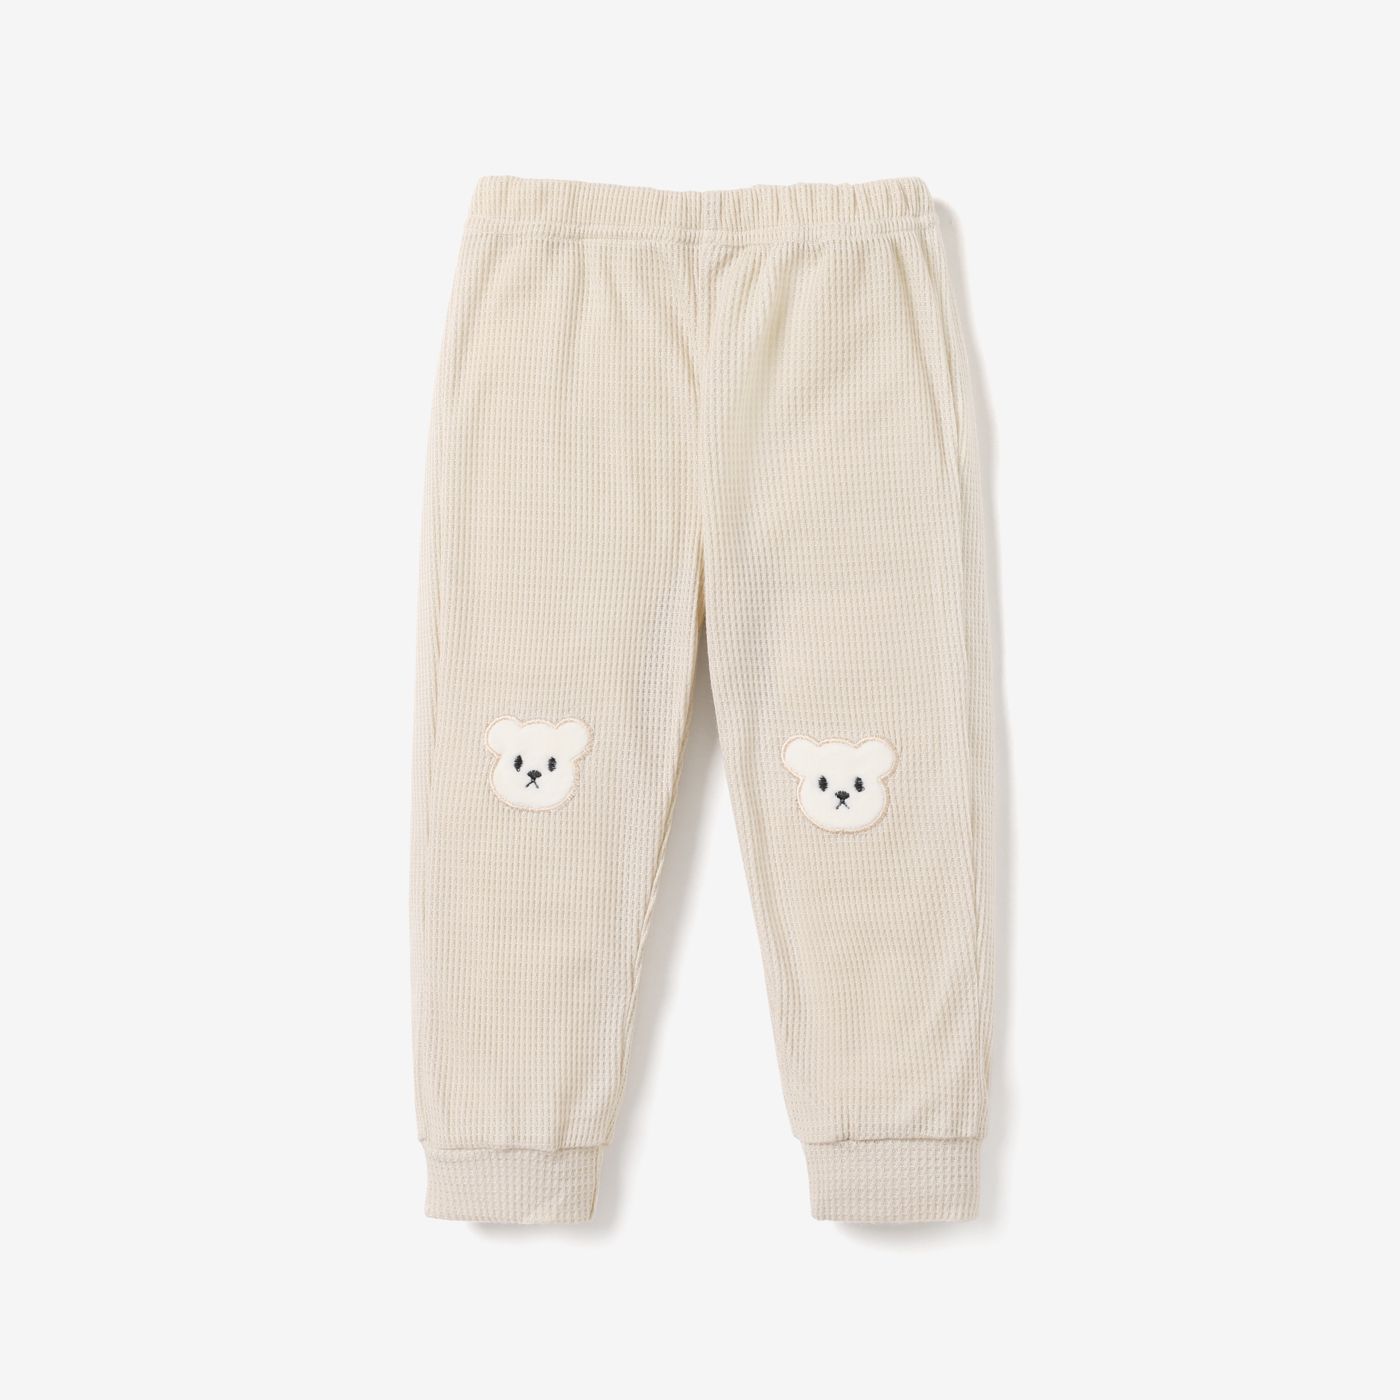 Toddler Girl/Boy Animal Bear Pattern Casual Pants